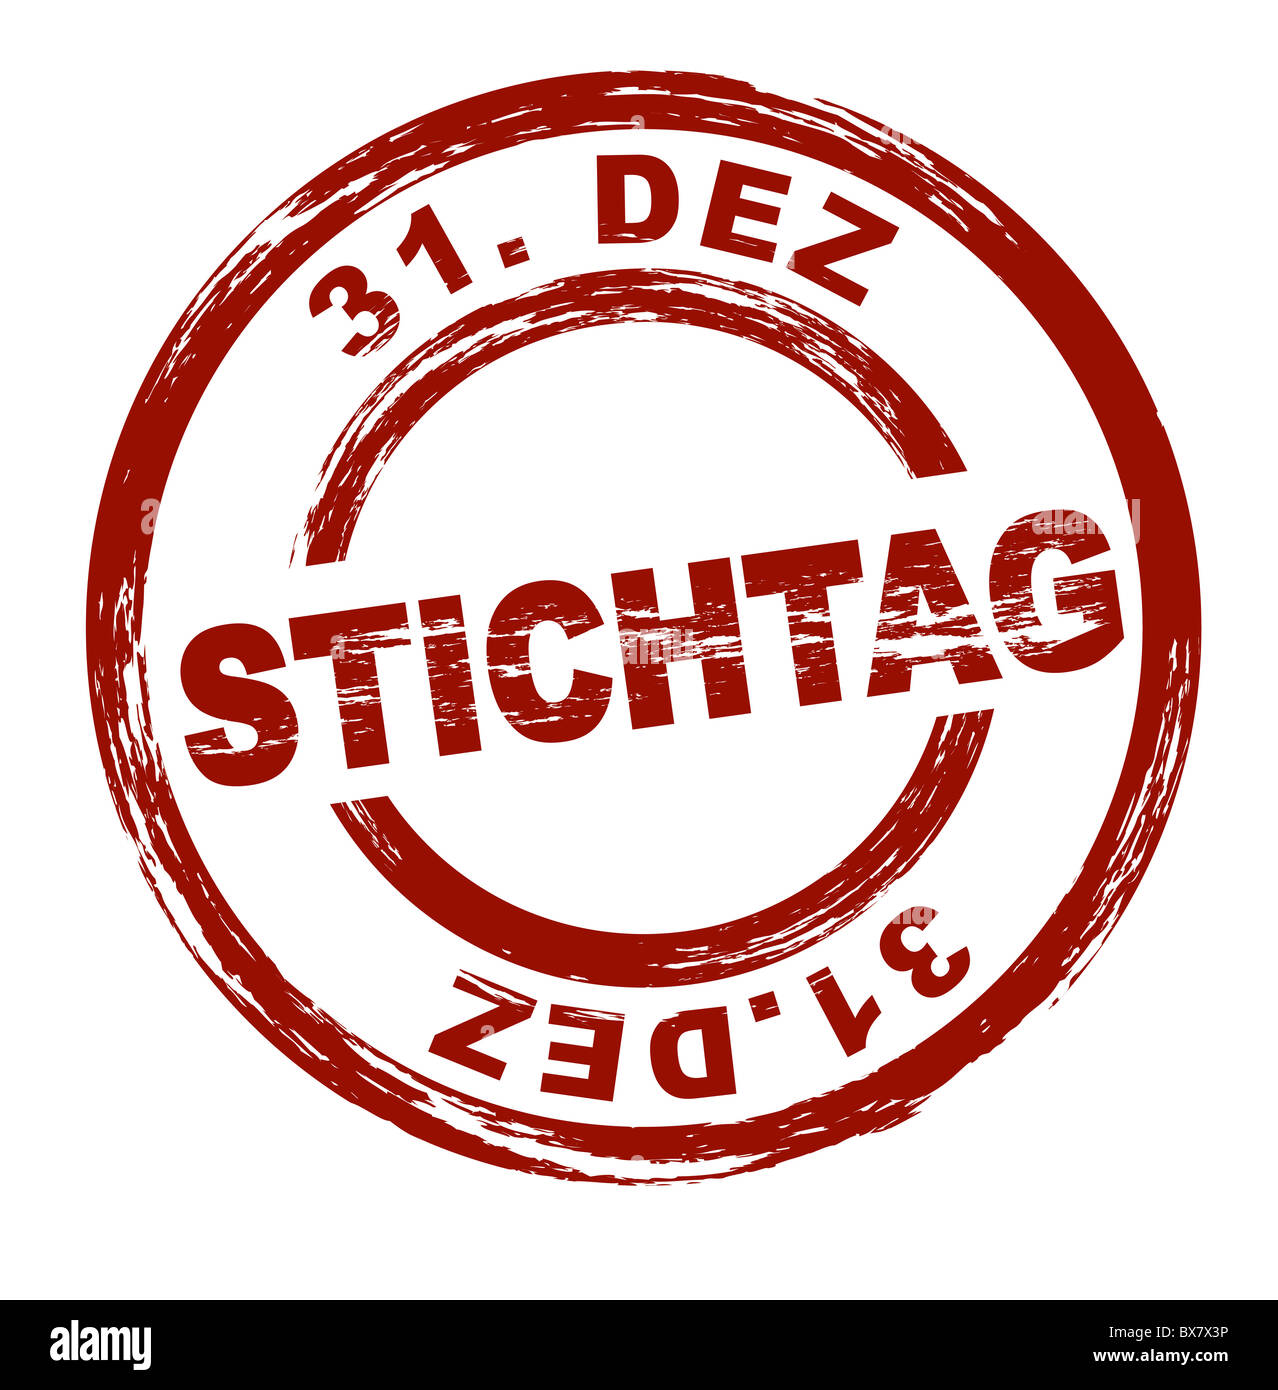 Stilisierte rote Stempel Shwoing der deutsche Begriff Stichtag 31. Dez. Englische Übersetzung: Frist 31. Dec. Alle auf weißem Hintergrund. Stockfoto